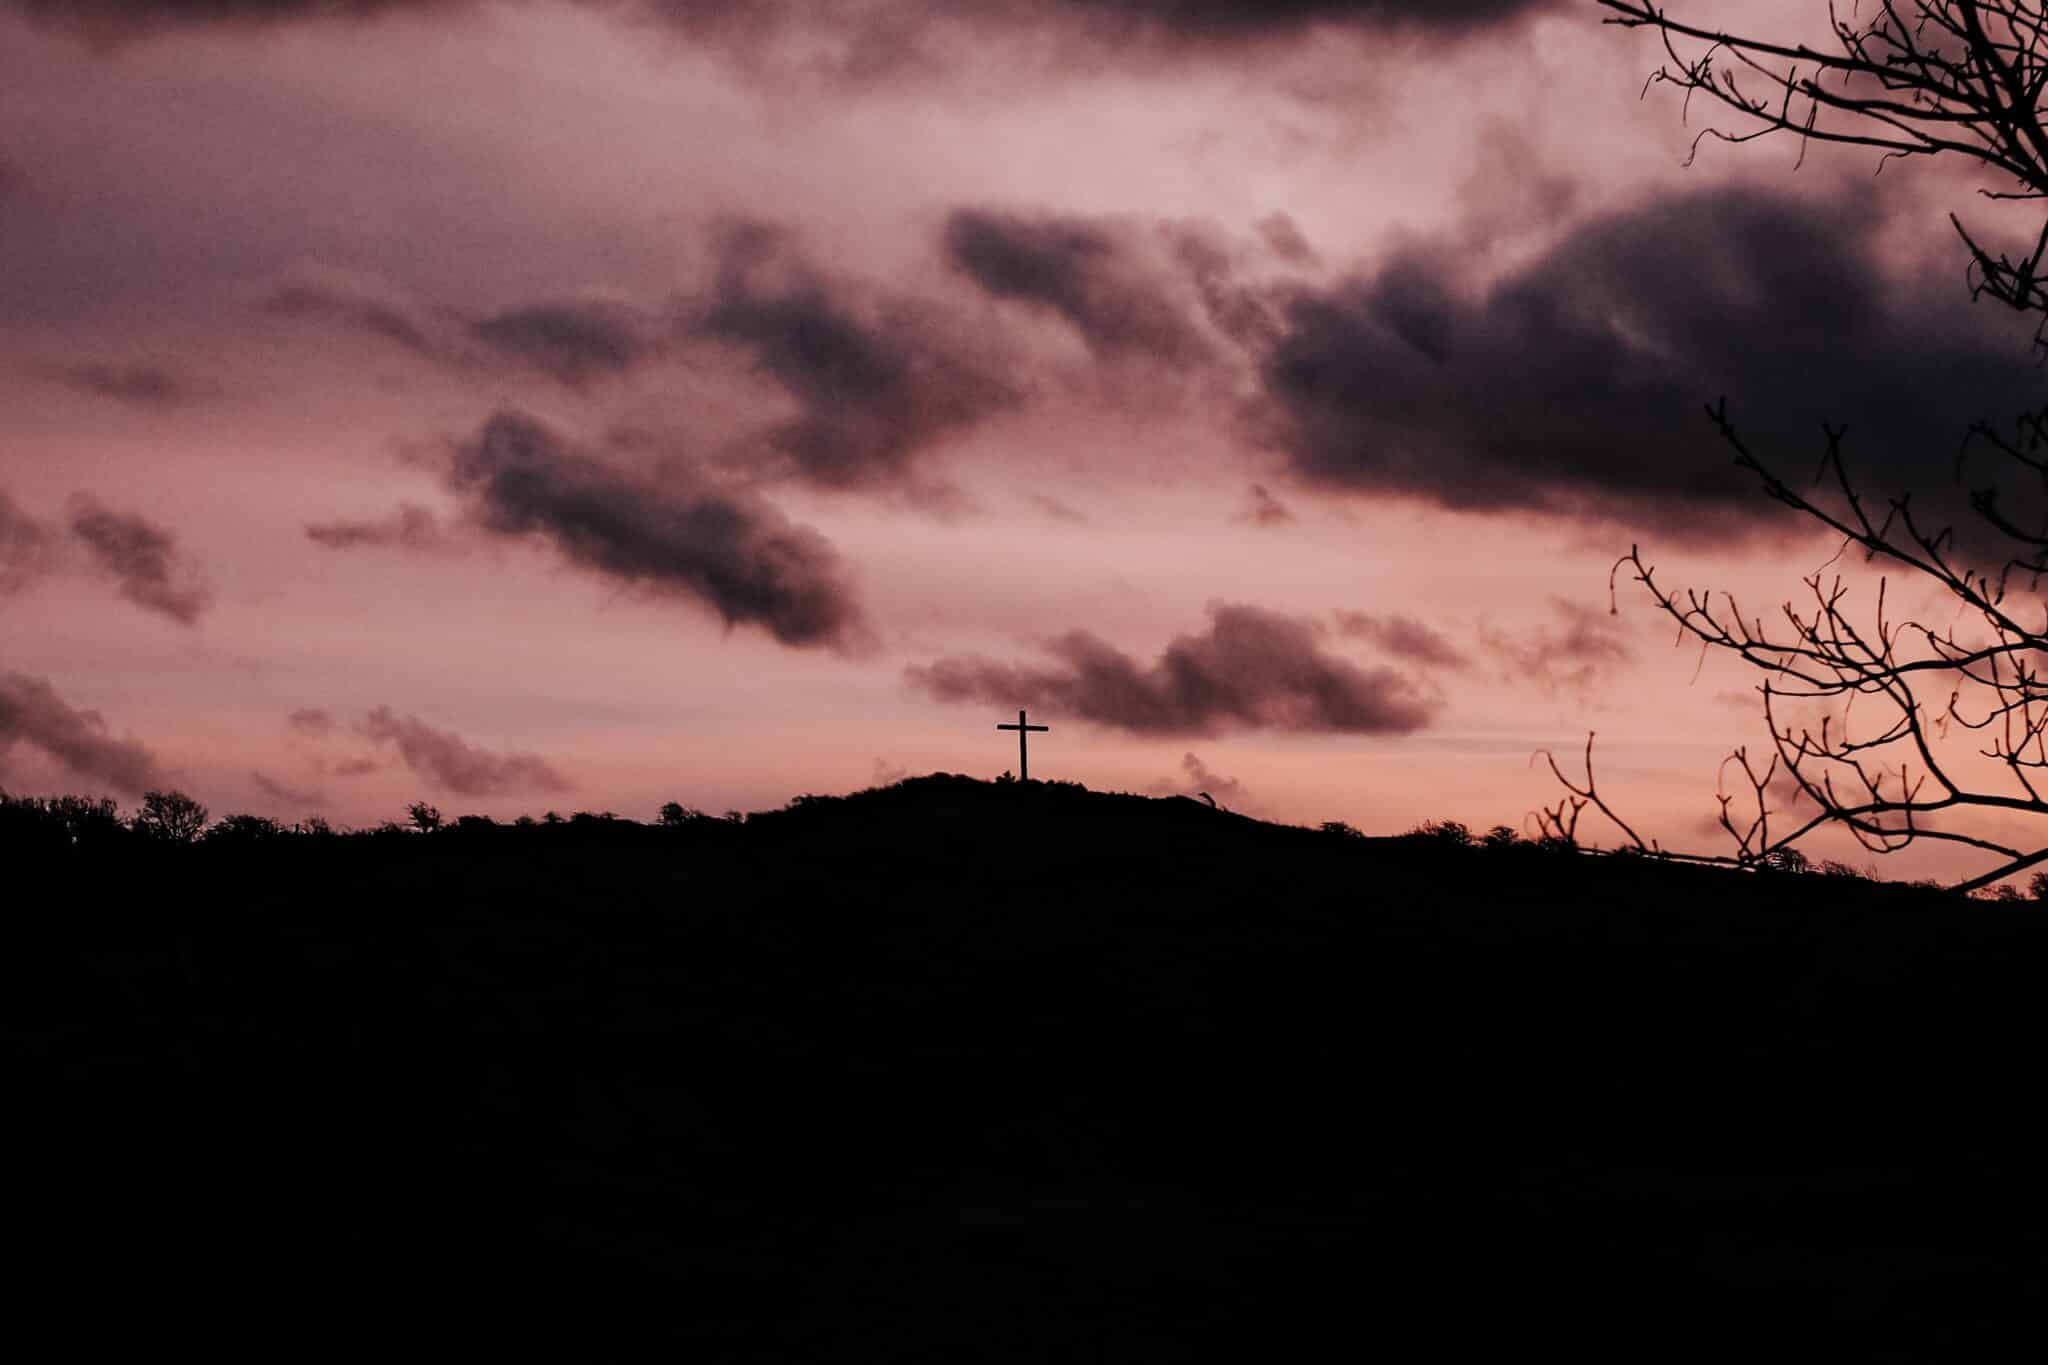 Cross on a mountainside | Photo by Teddy Jansen on Unsplash